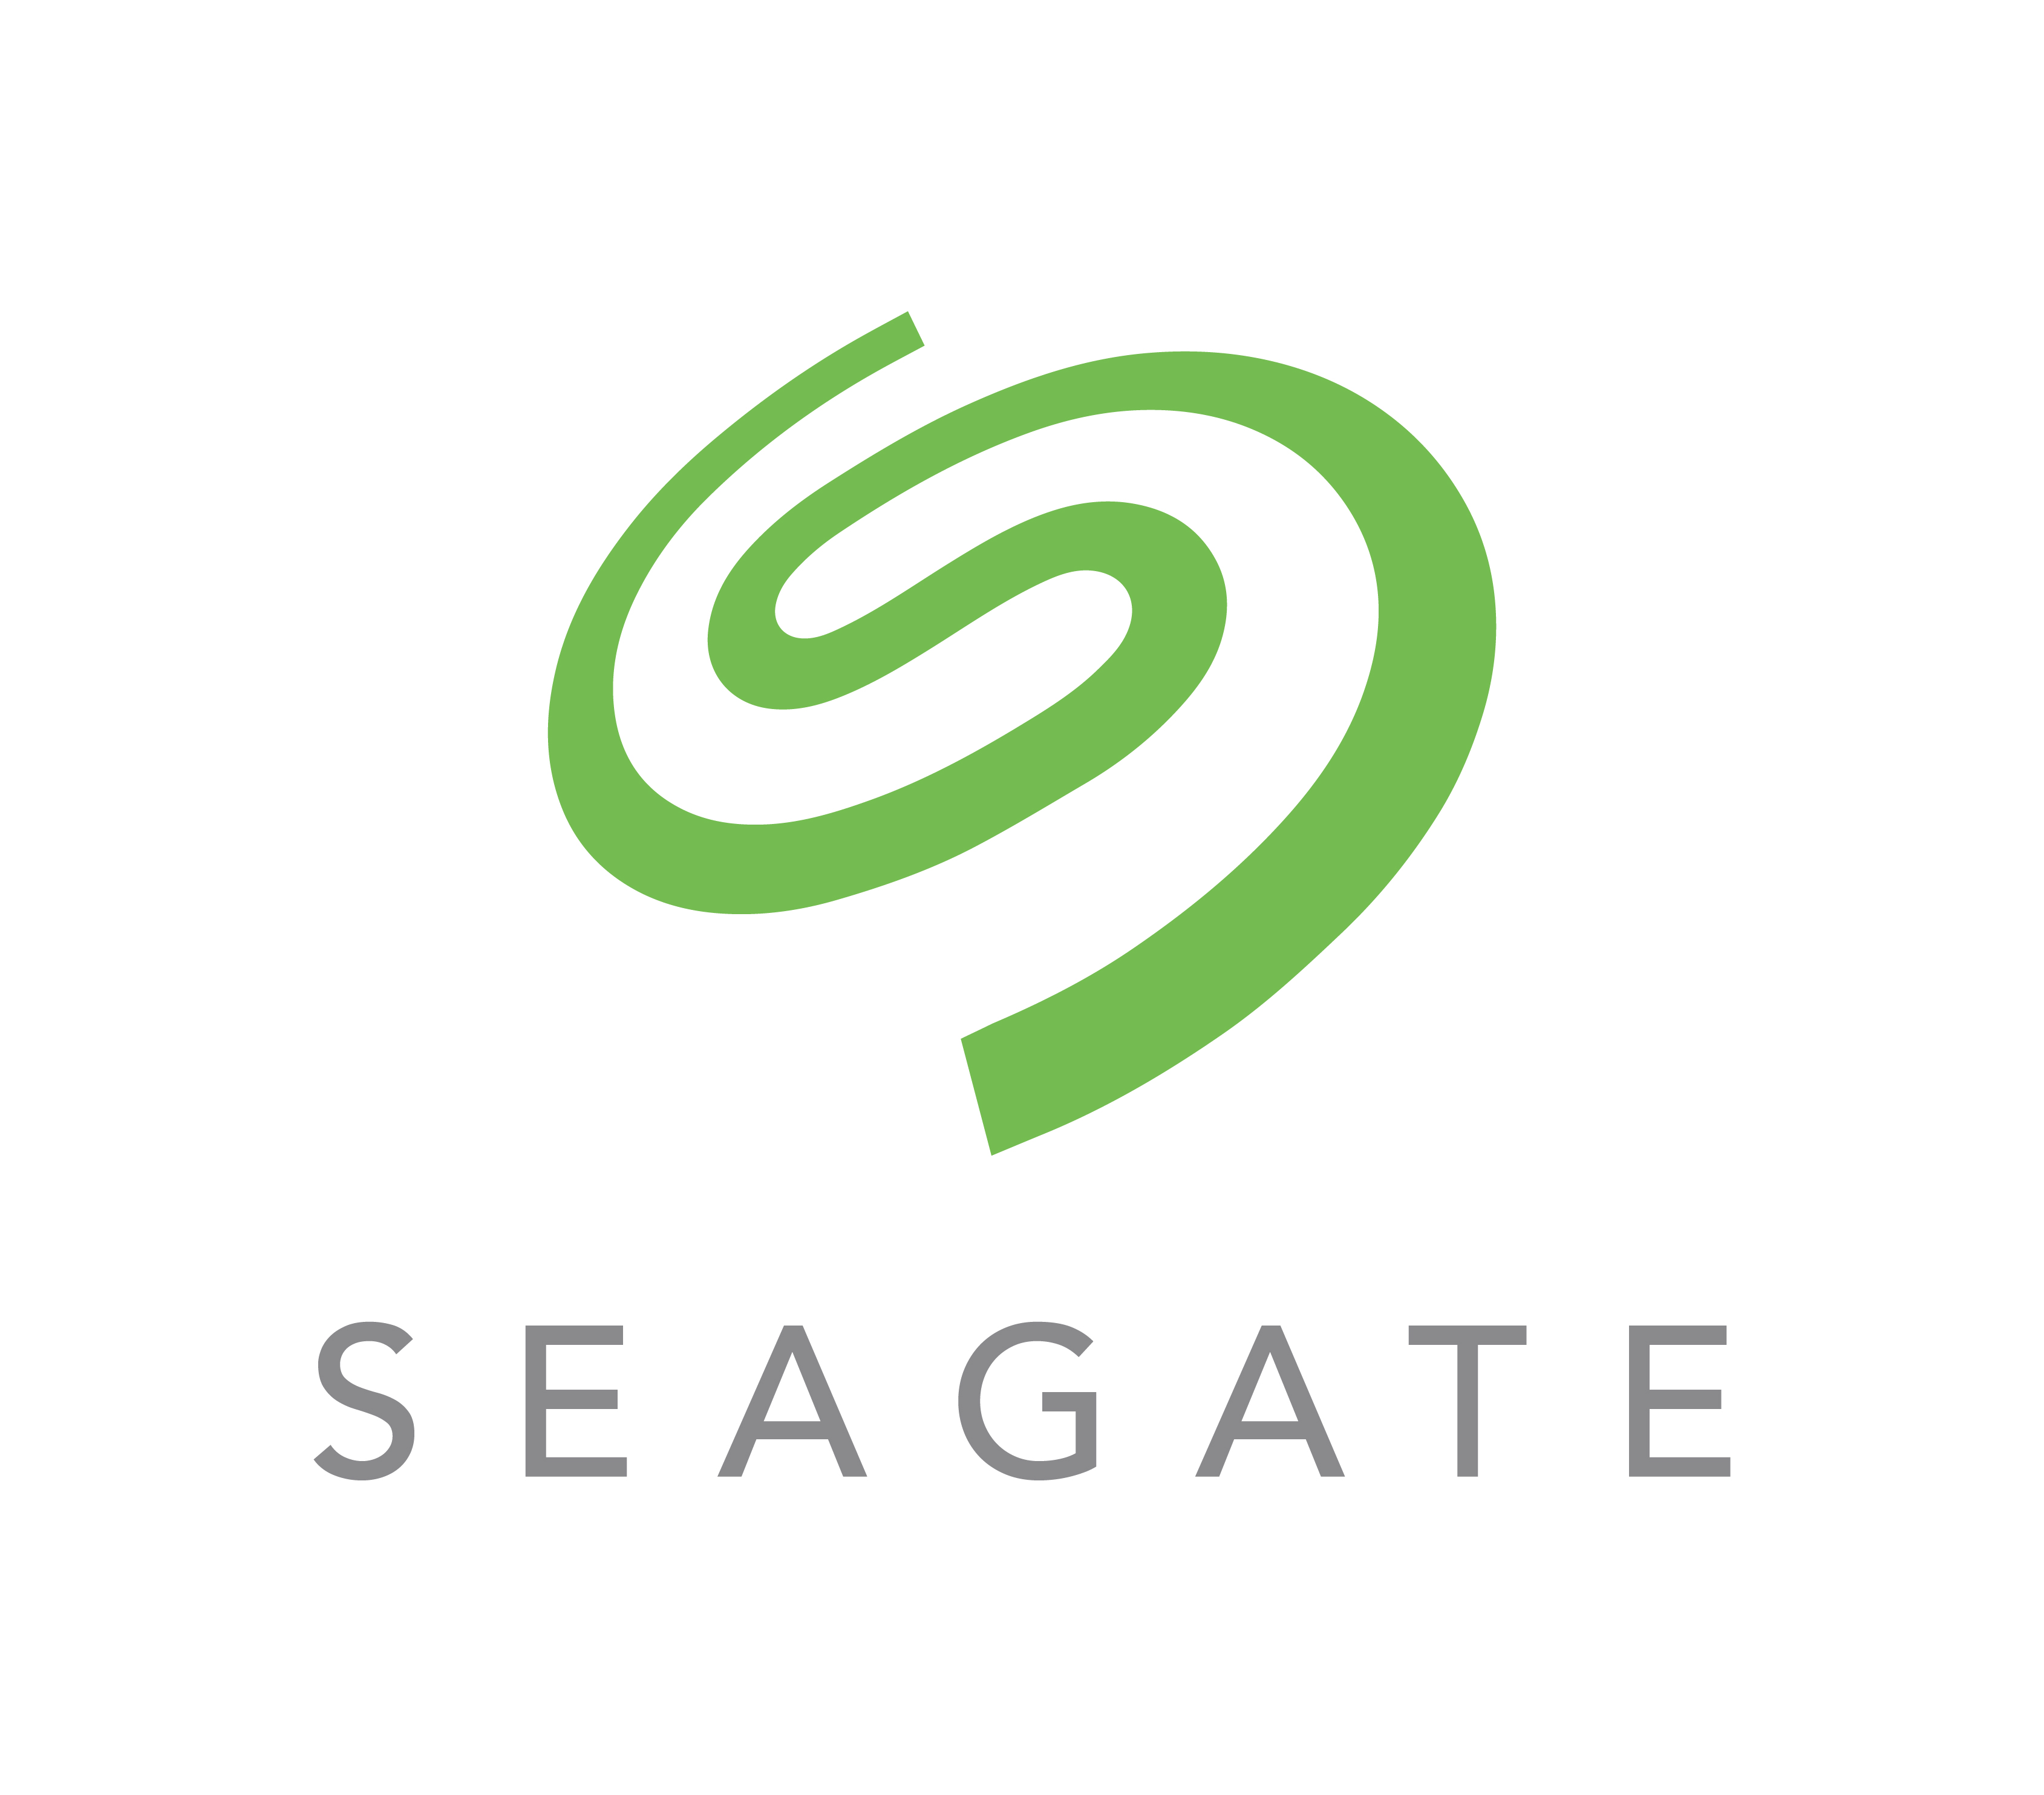 Seagate เตรียมปลดพนักงาน 3,000 คนทั่วโลก หลังยอดจำหน่ายพีซีลดลง